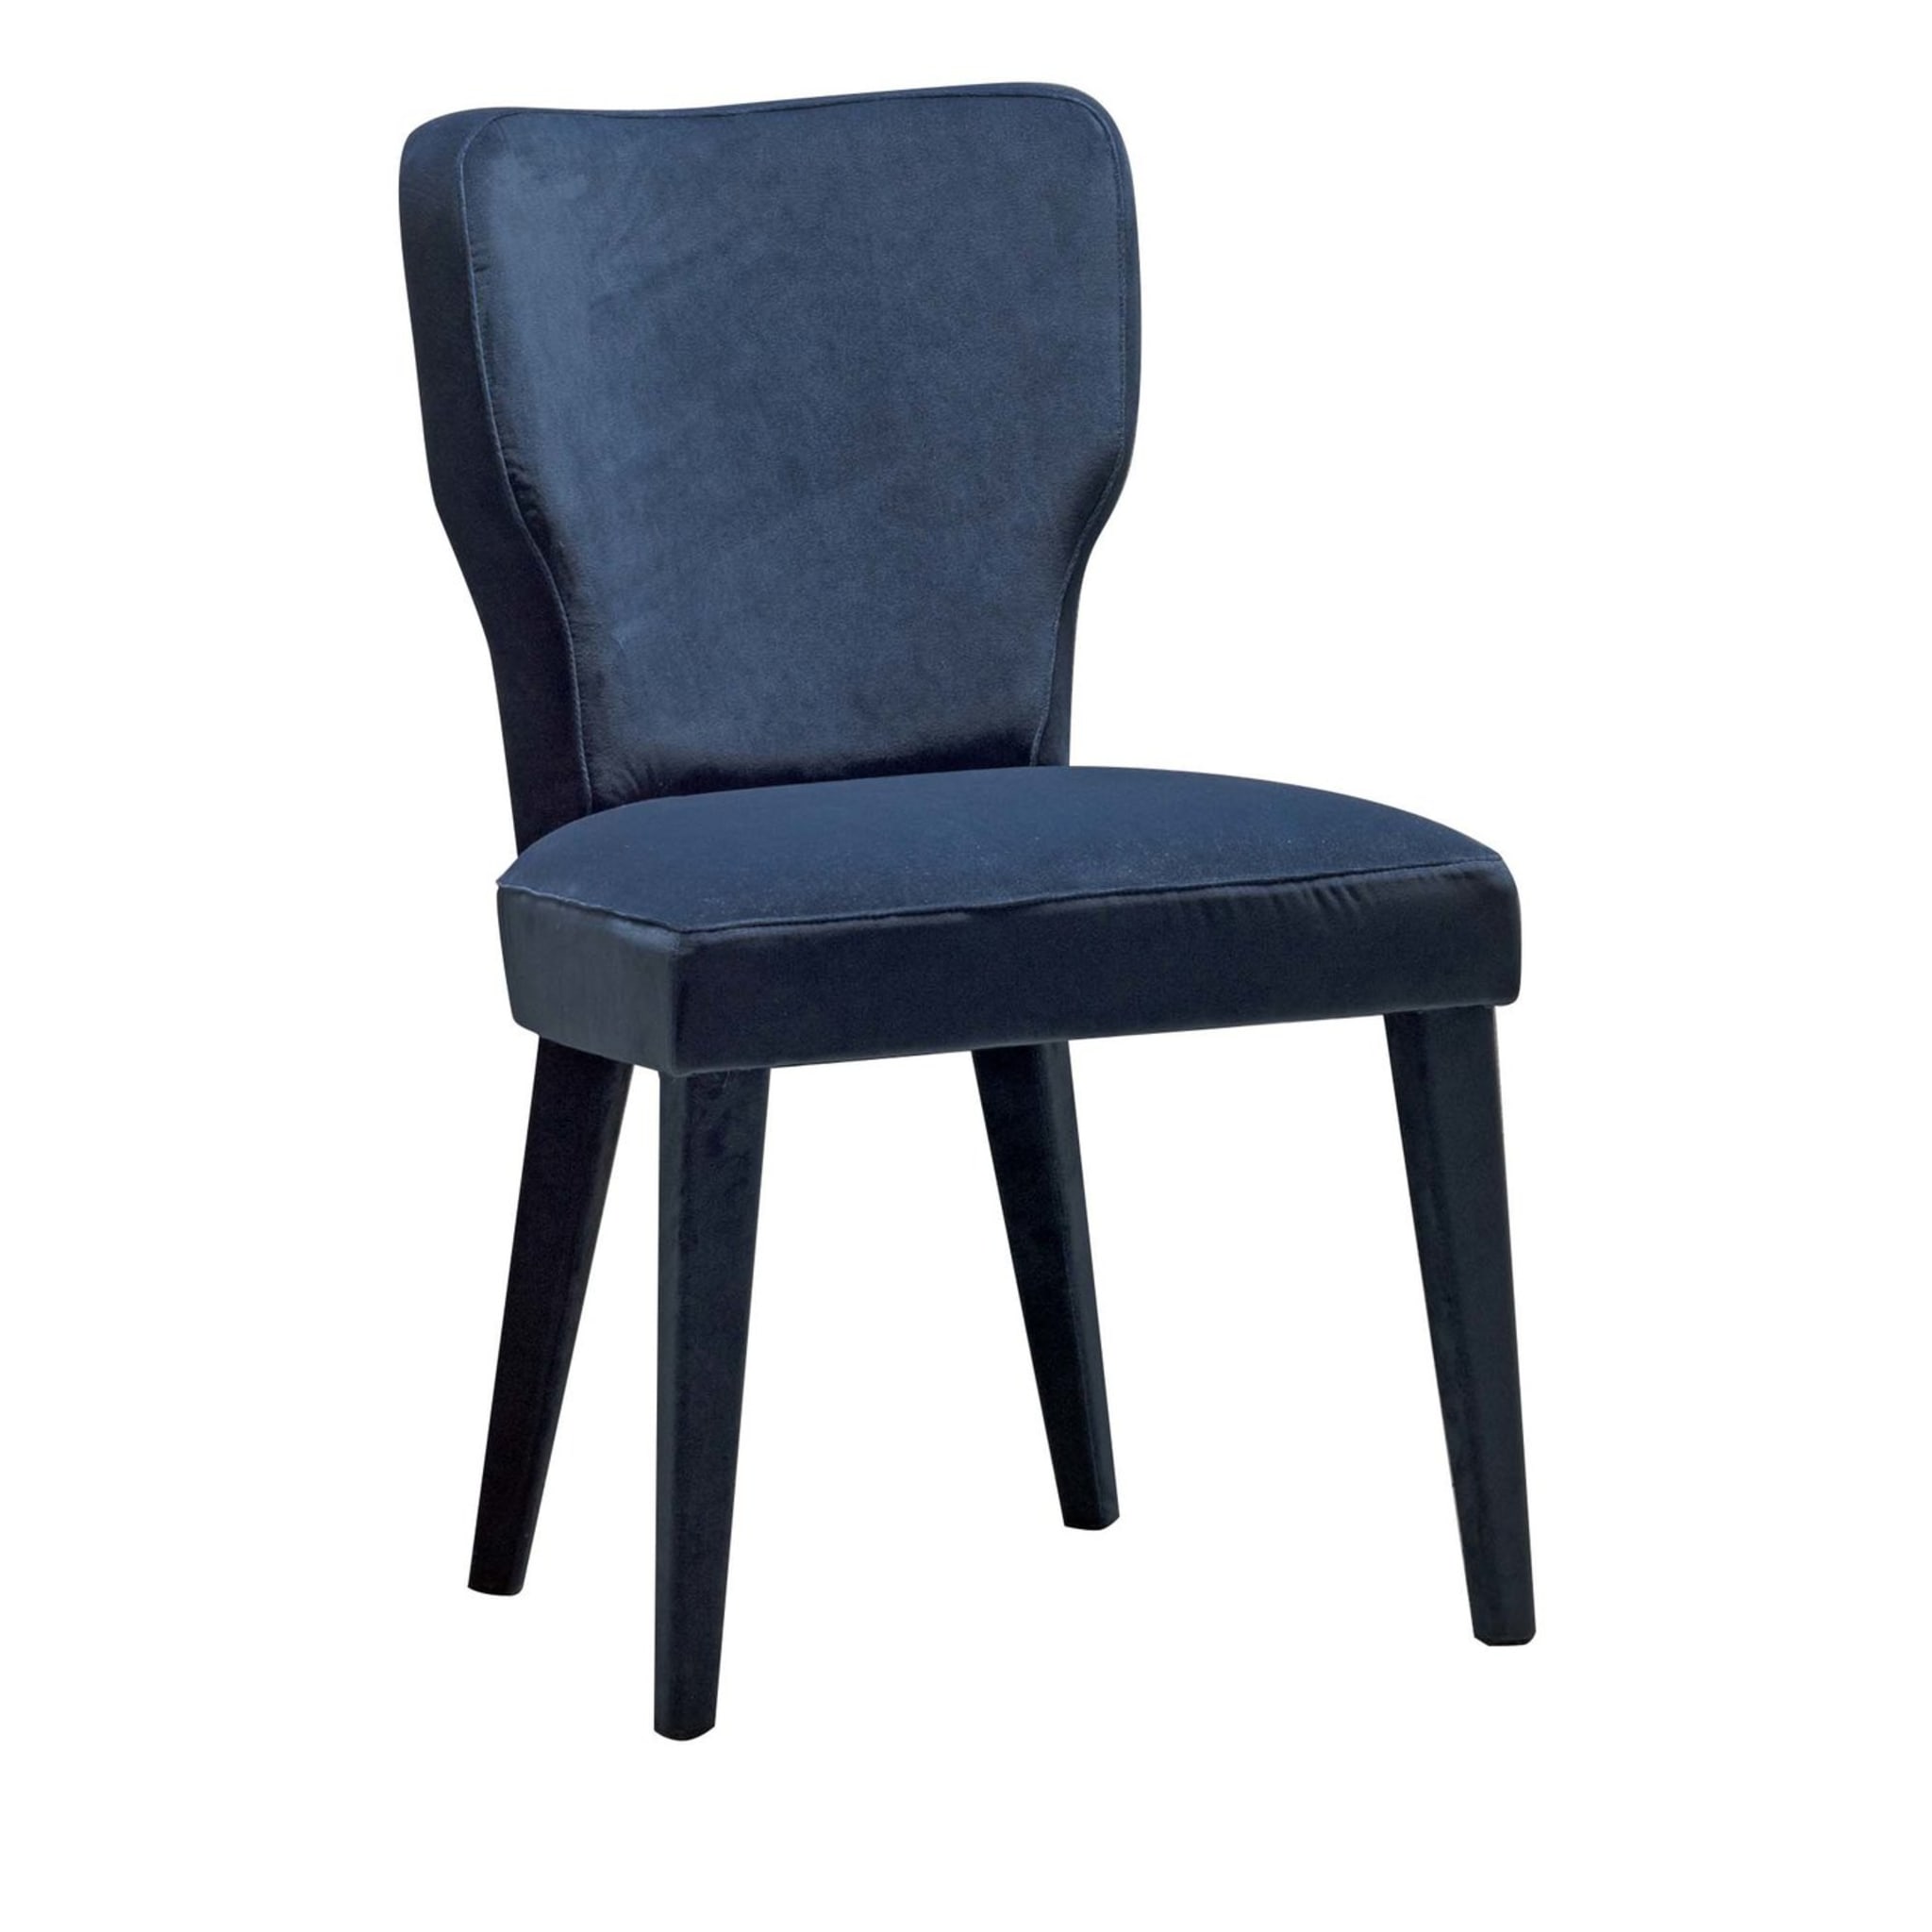 Lady V Blue Chair by Ciarmoli Queda Studio - Main view